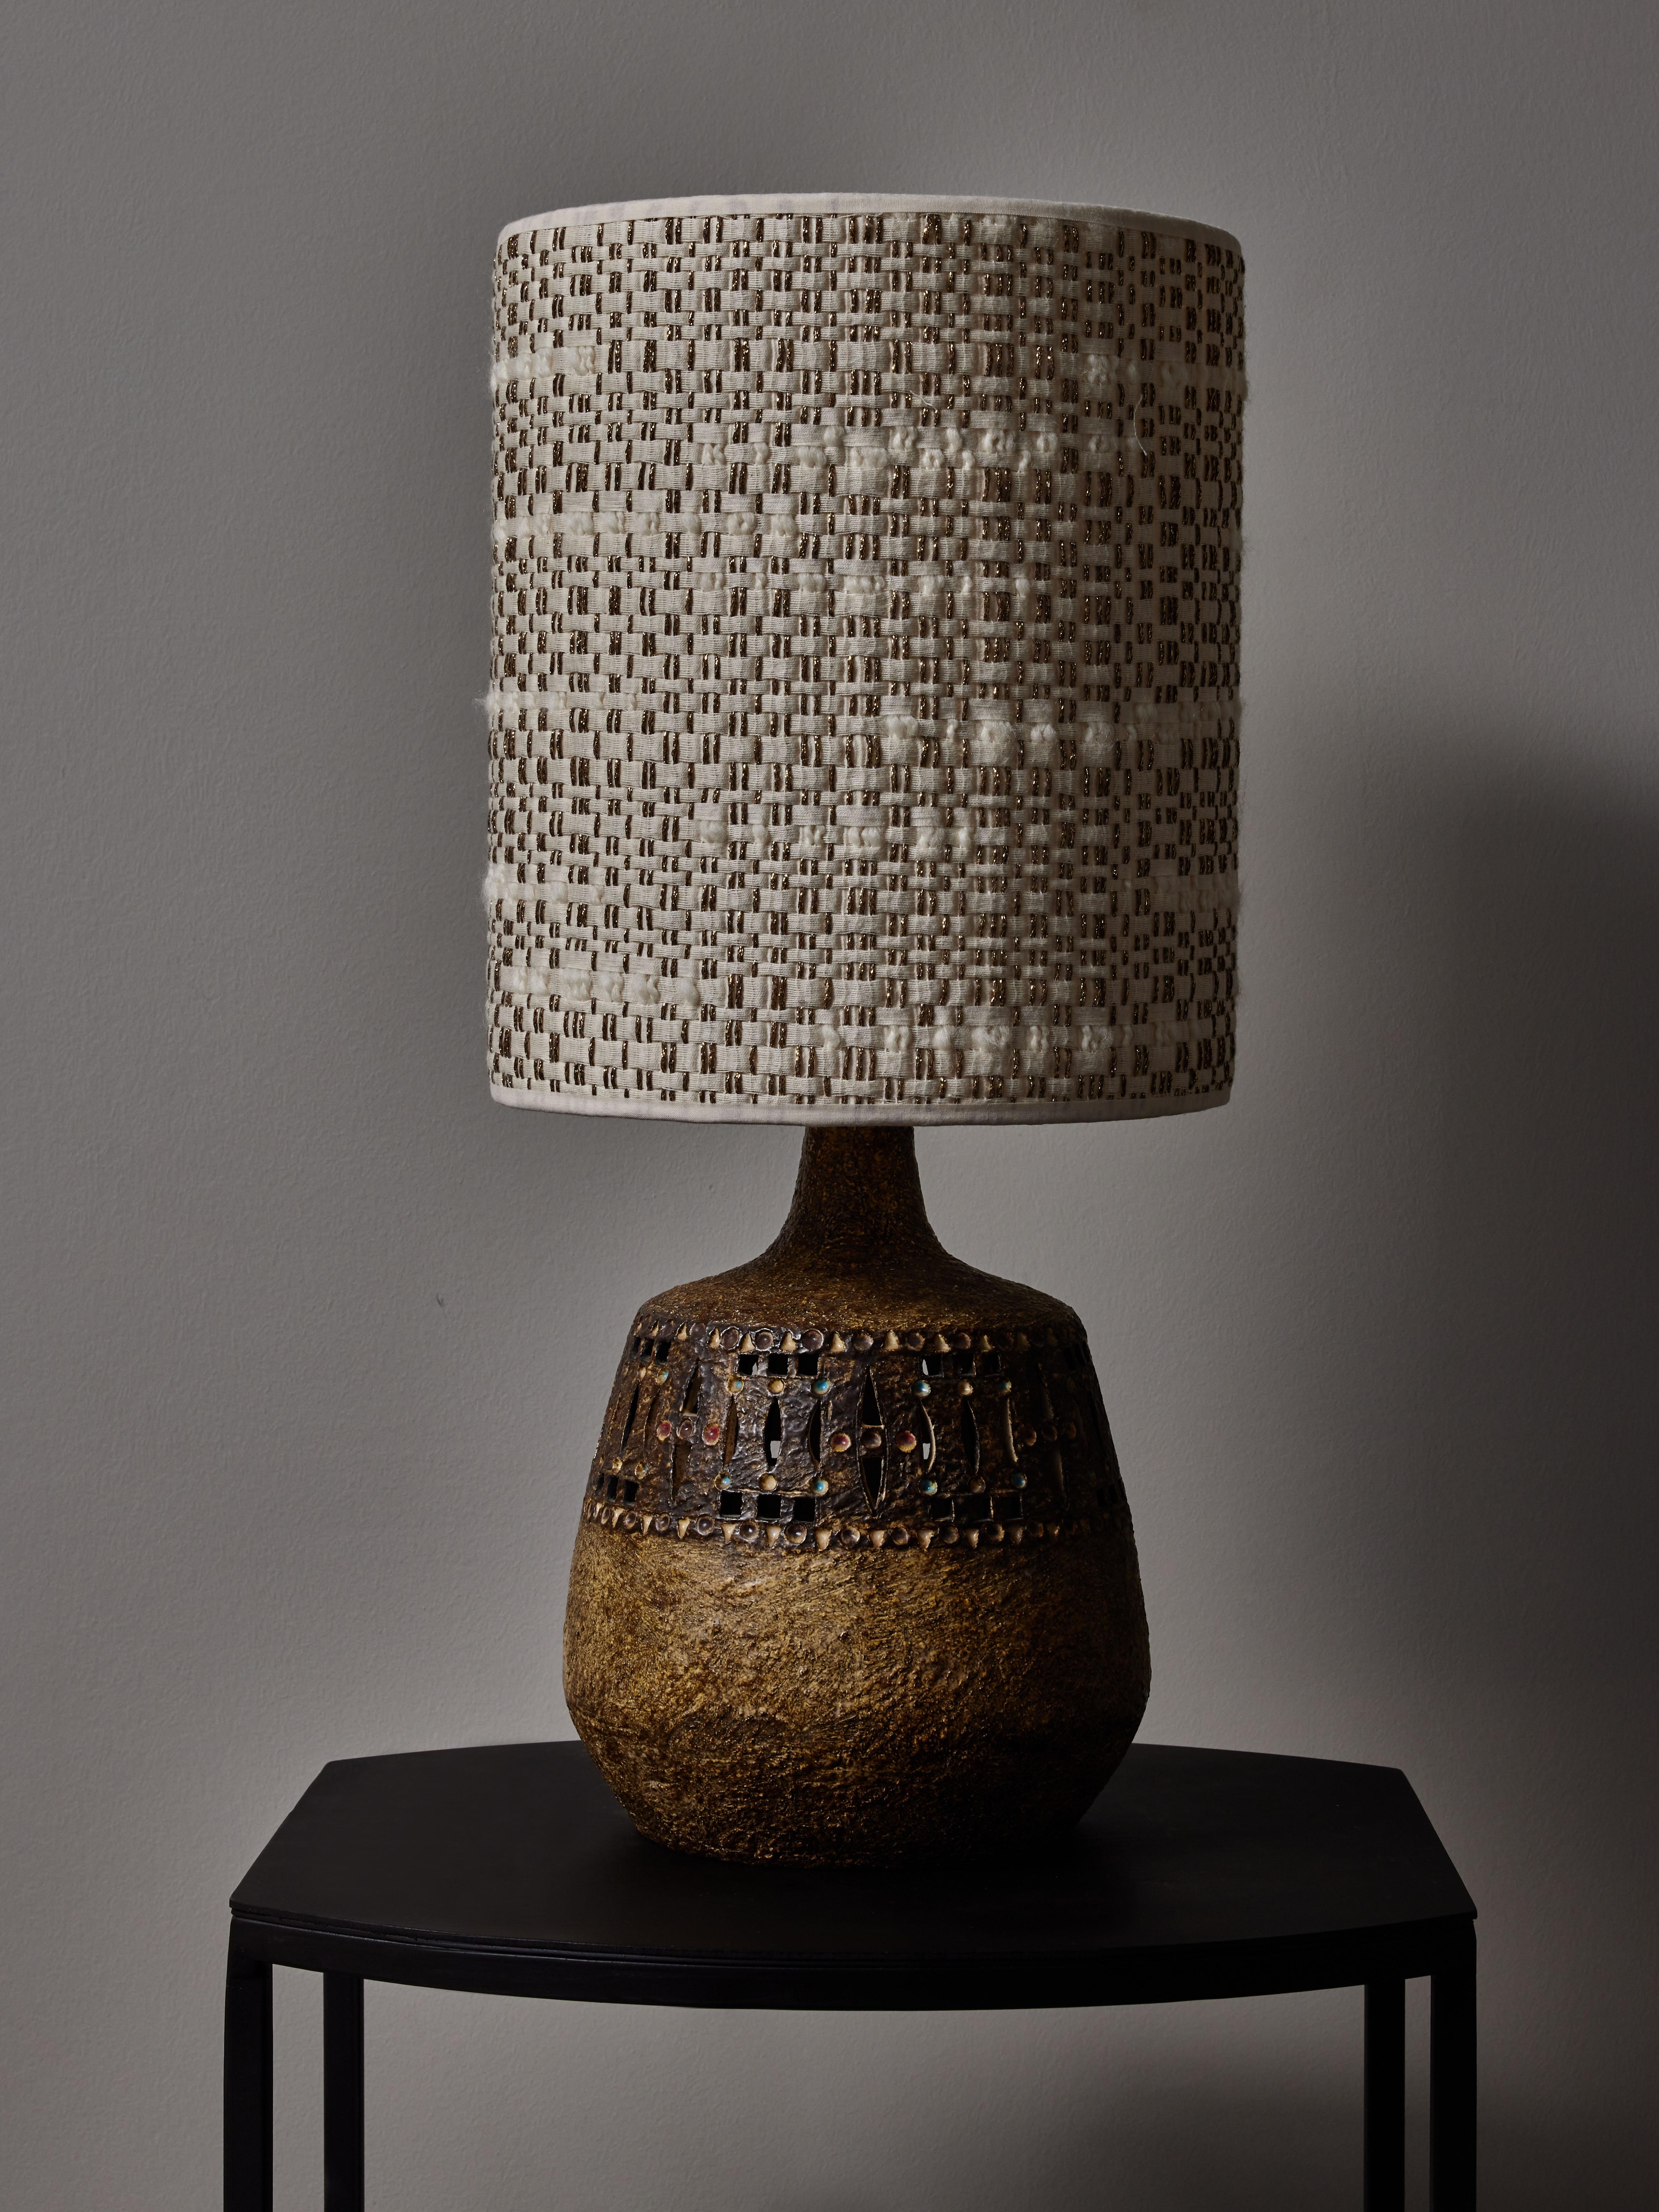 Lampe de table vintage en céramique dans des tons de terre avec des petits points de couleurs par Raphael Giarrusso dans les années 1960. Le tout est surmonté d'un nouvel abat-jour en tissu Dedar Milano.

Raphaël Giarrusso (1925-1986)
Peintre,